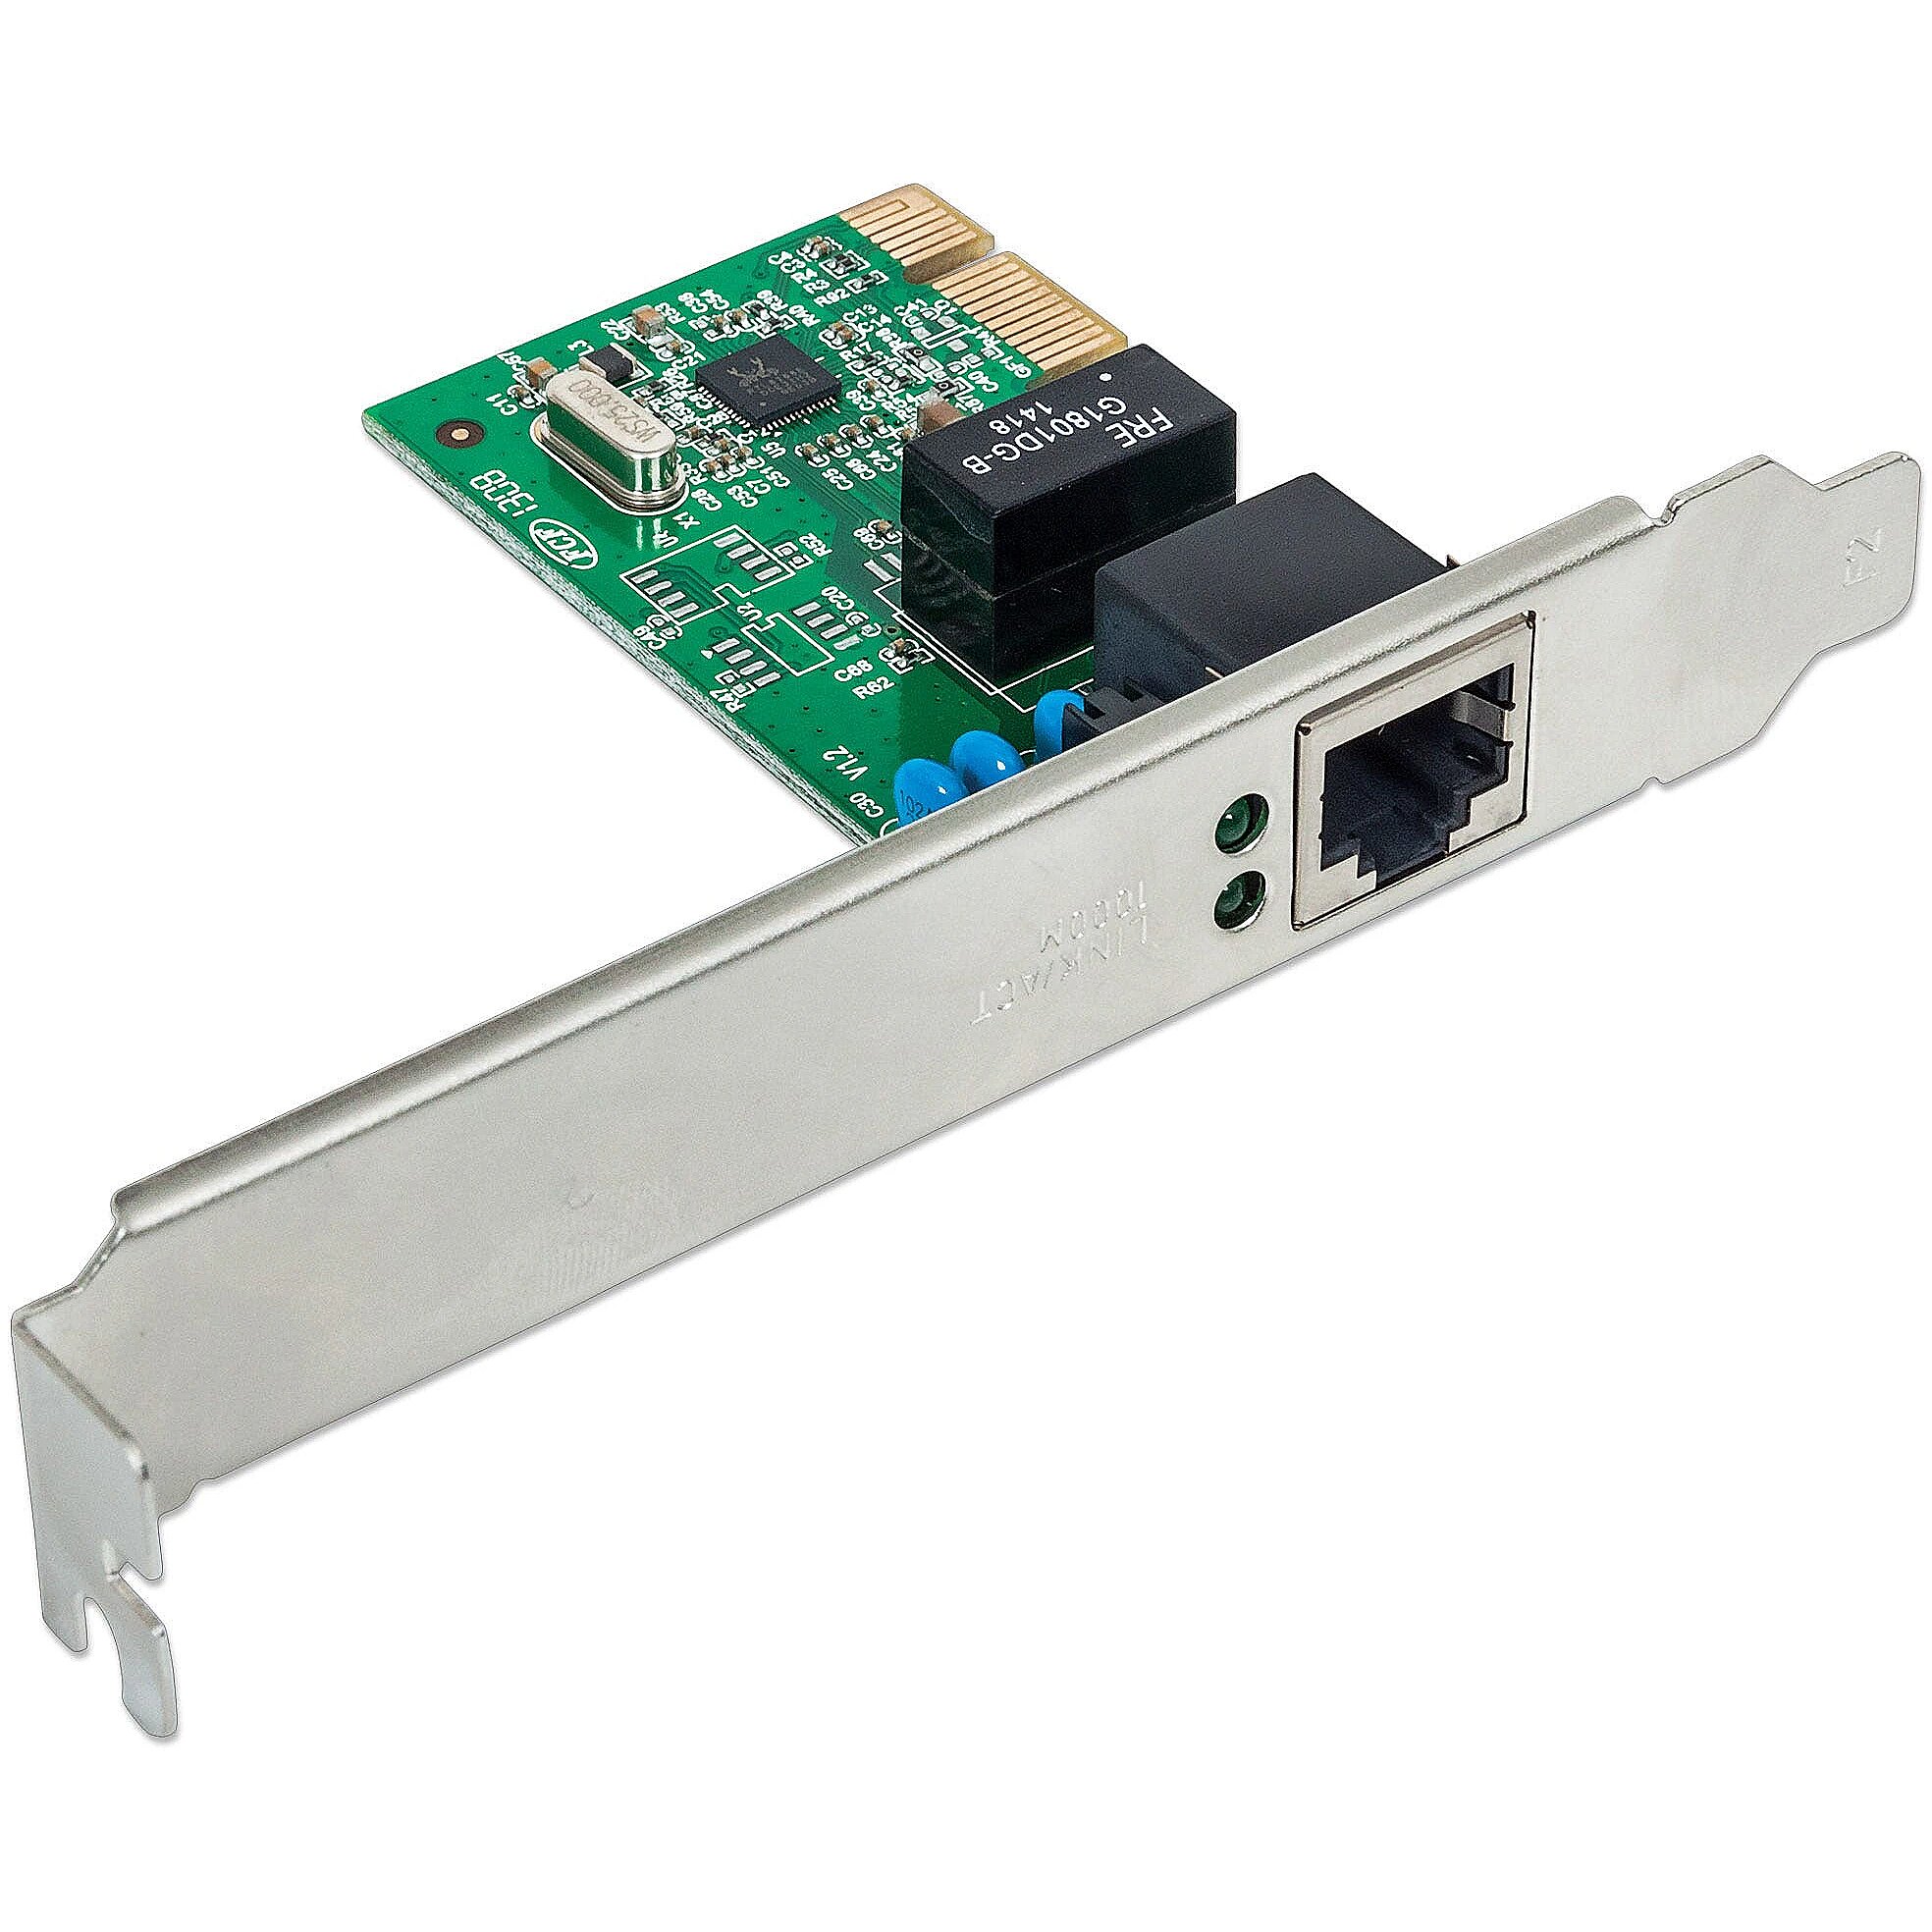 Сетевая карта rj45. Сетевая плата PCI Express. PCI Network Card. Сетевой адаптер Ethernet слот m2. Плата PCI Express rj45+rj11.